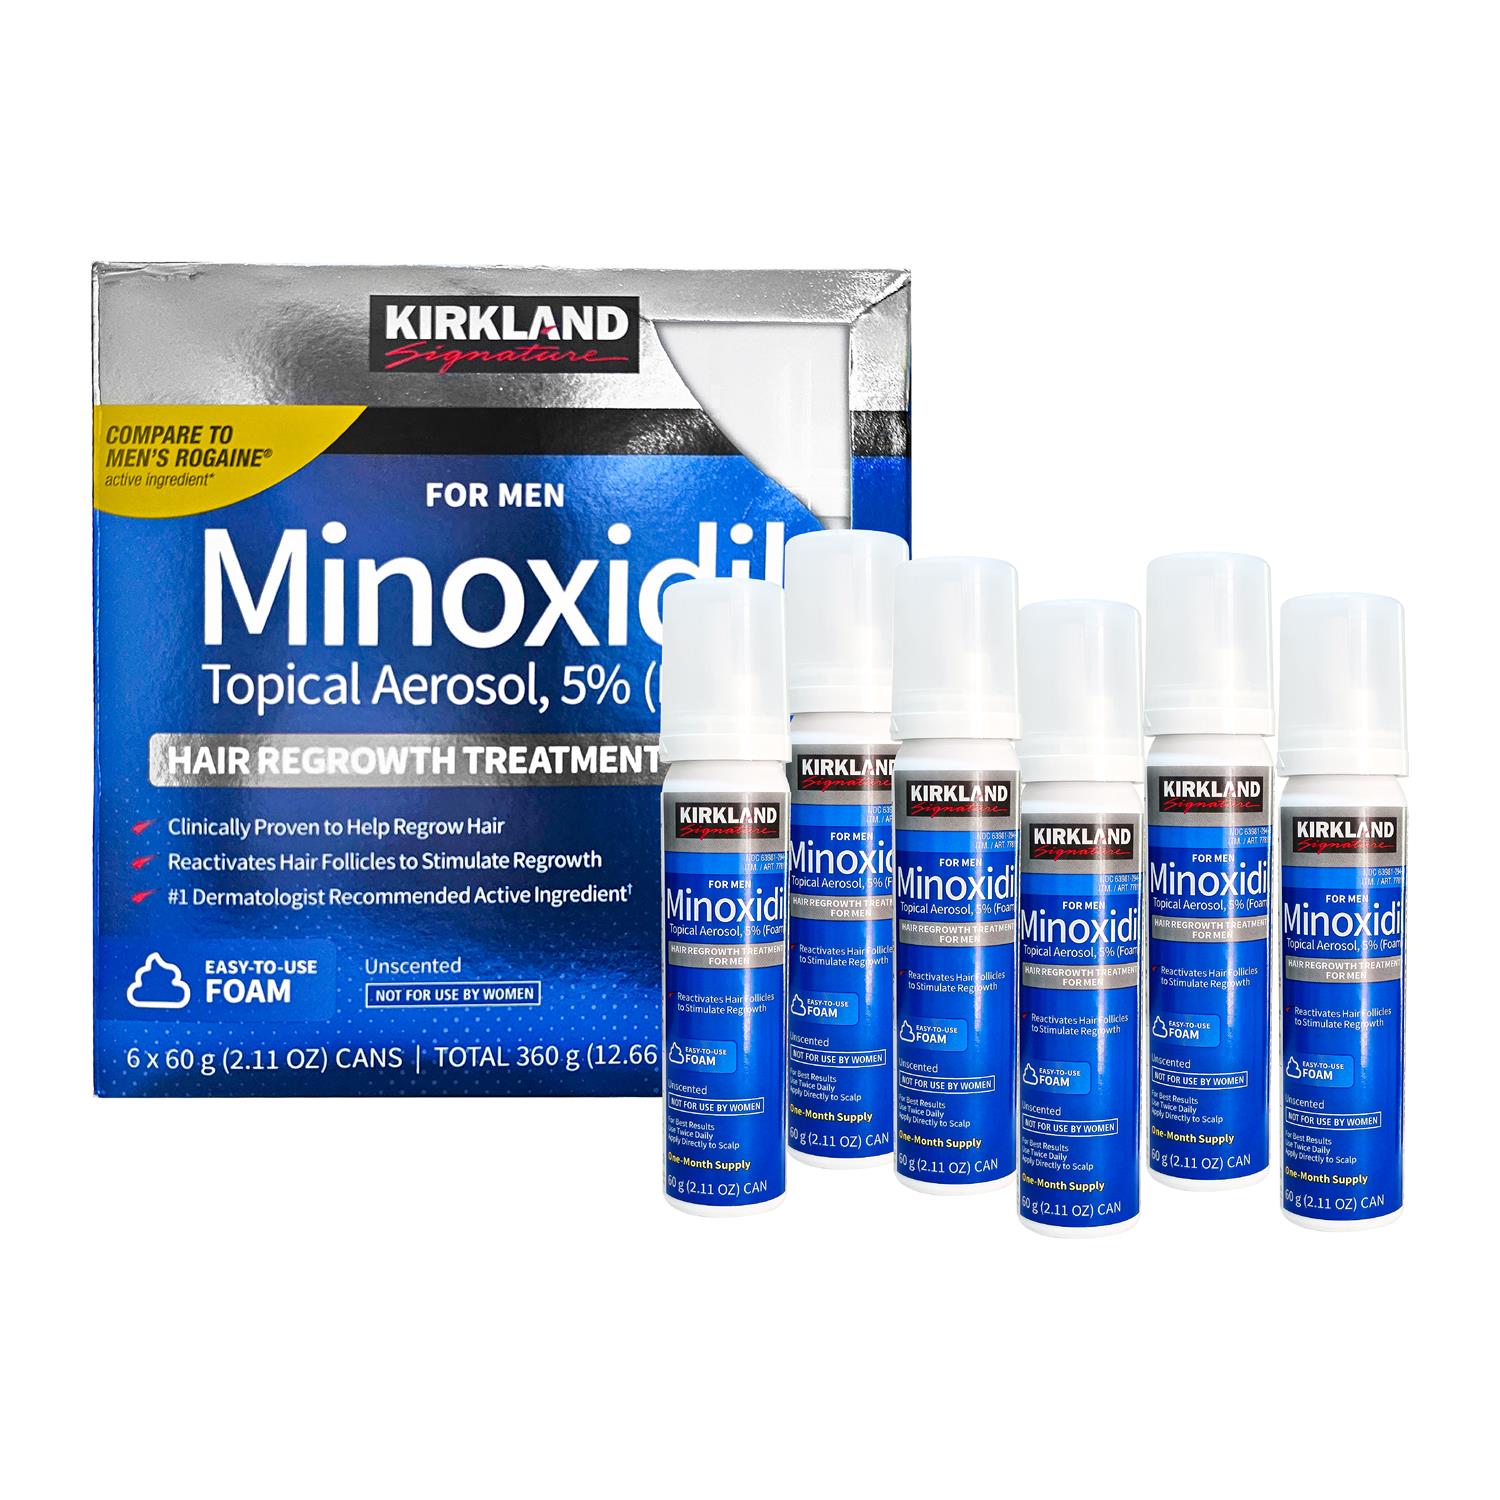 Minoxidil Espuma para Barba y Cabello - Kirkland 60 ml